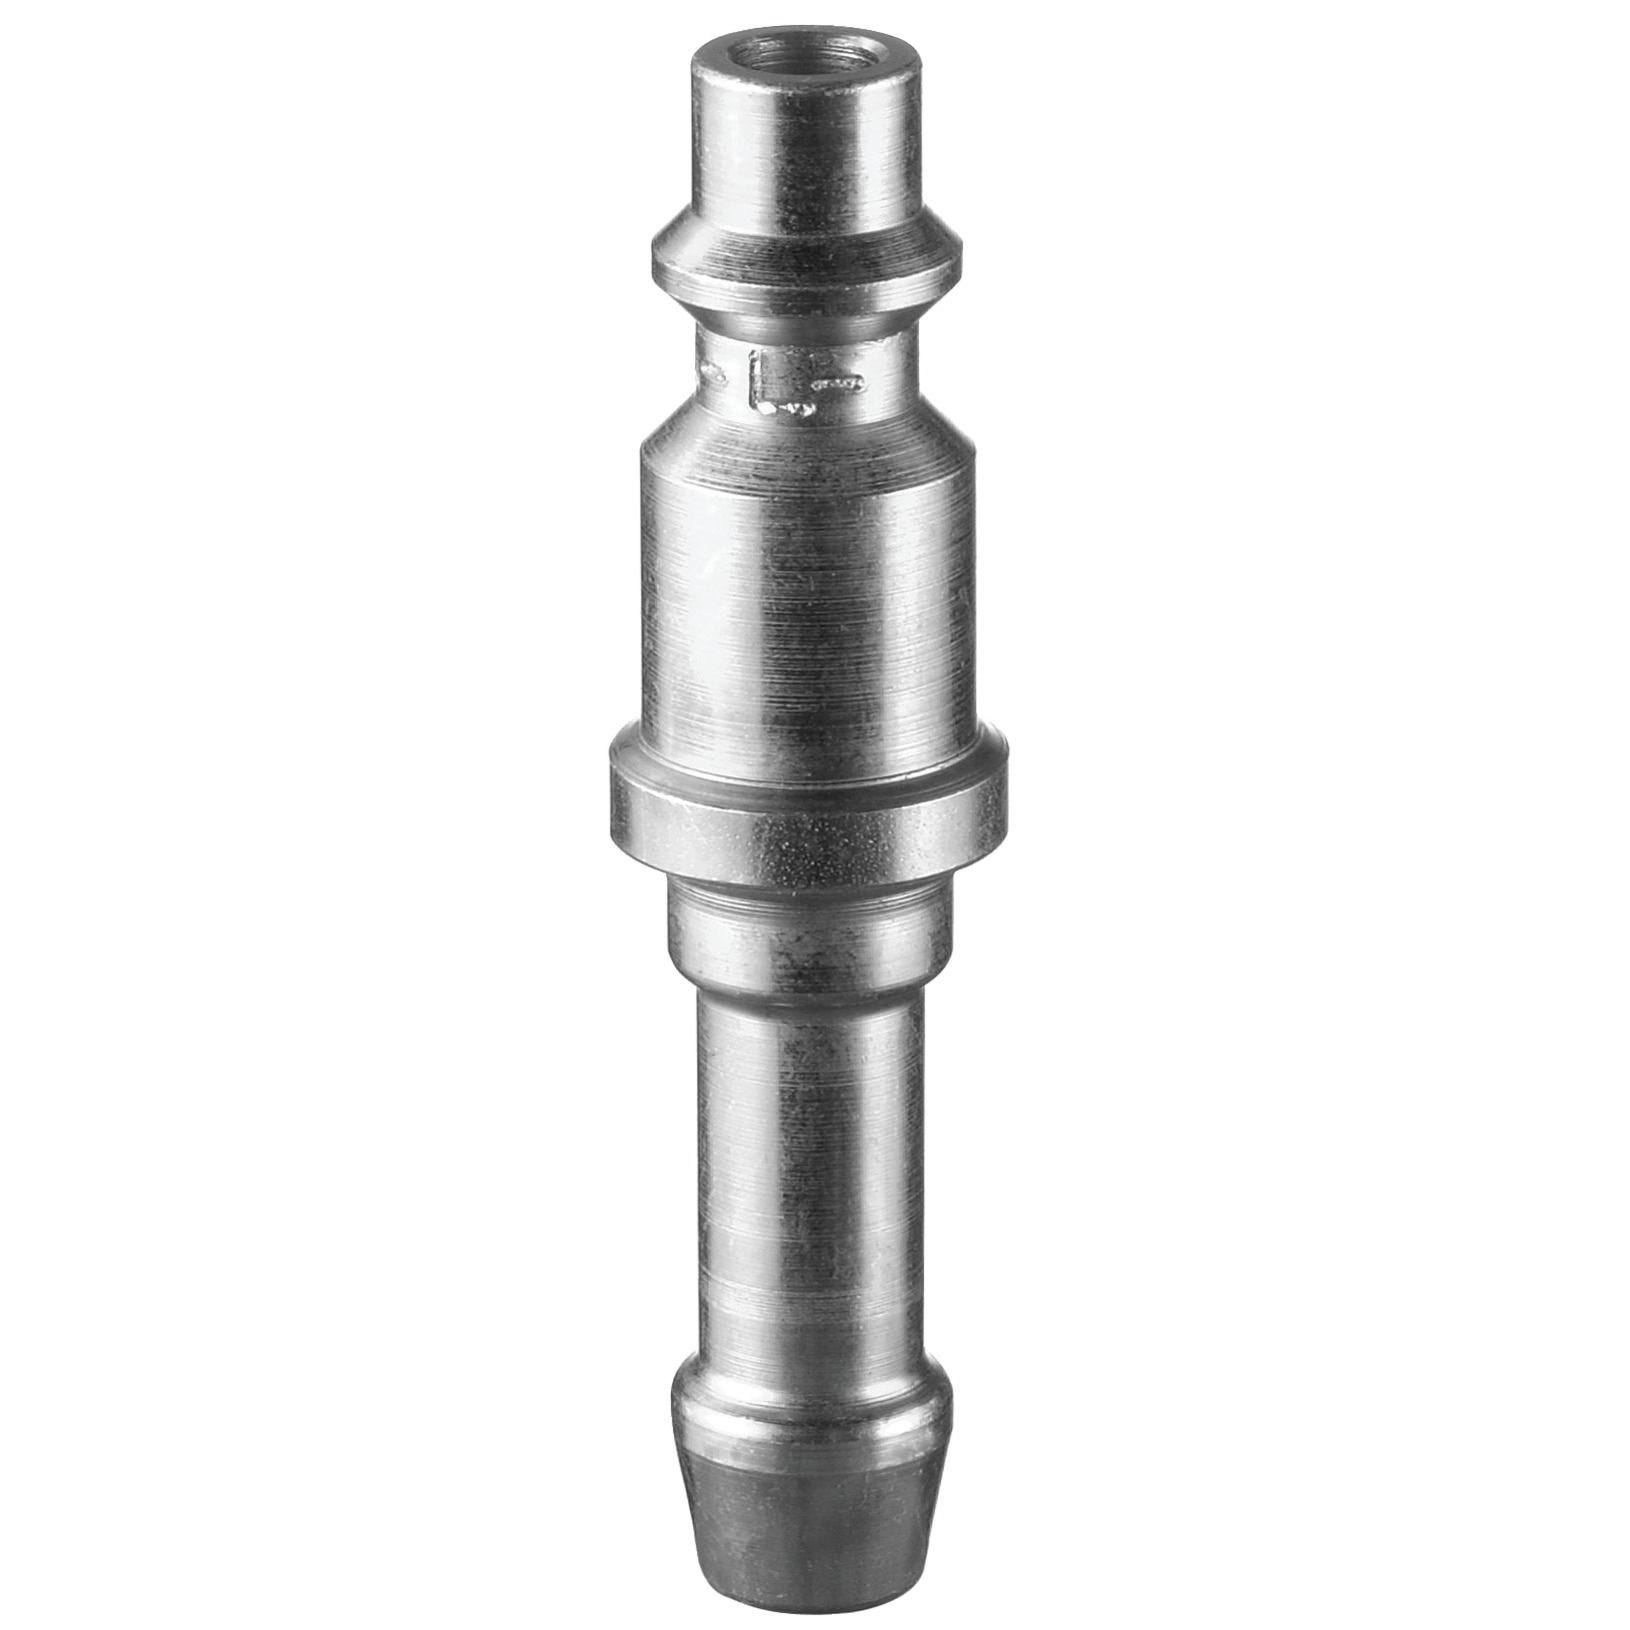 Embout pour flexibles diamètre 10mm - PREVOST - IRP 066810 0